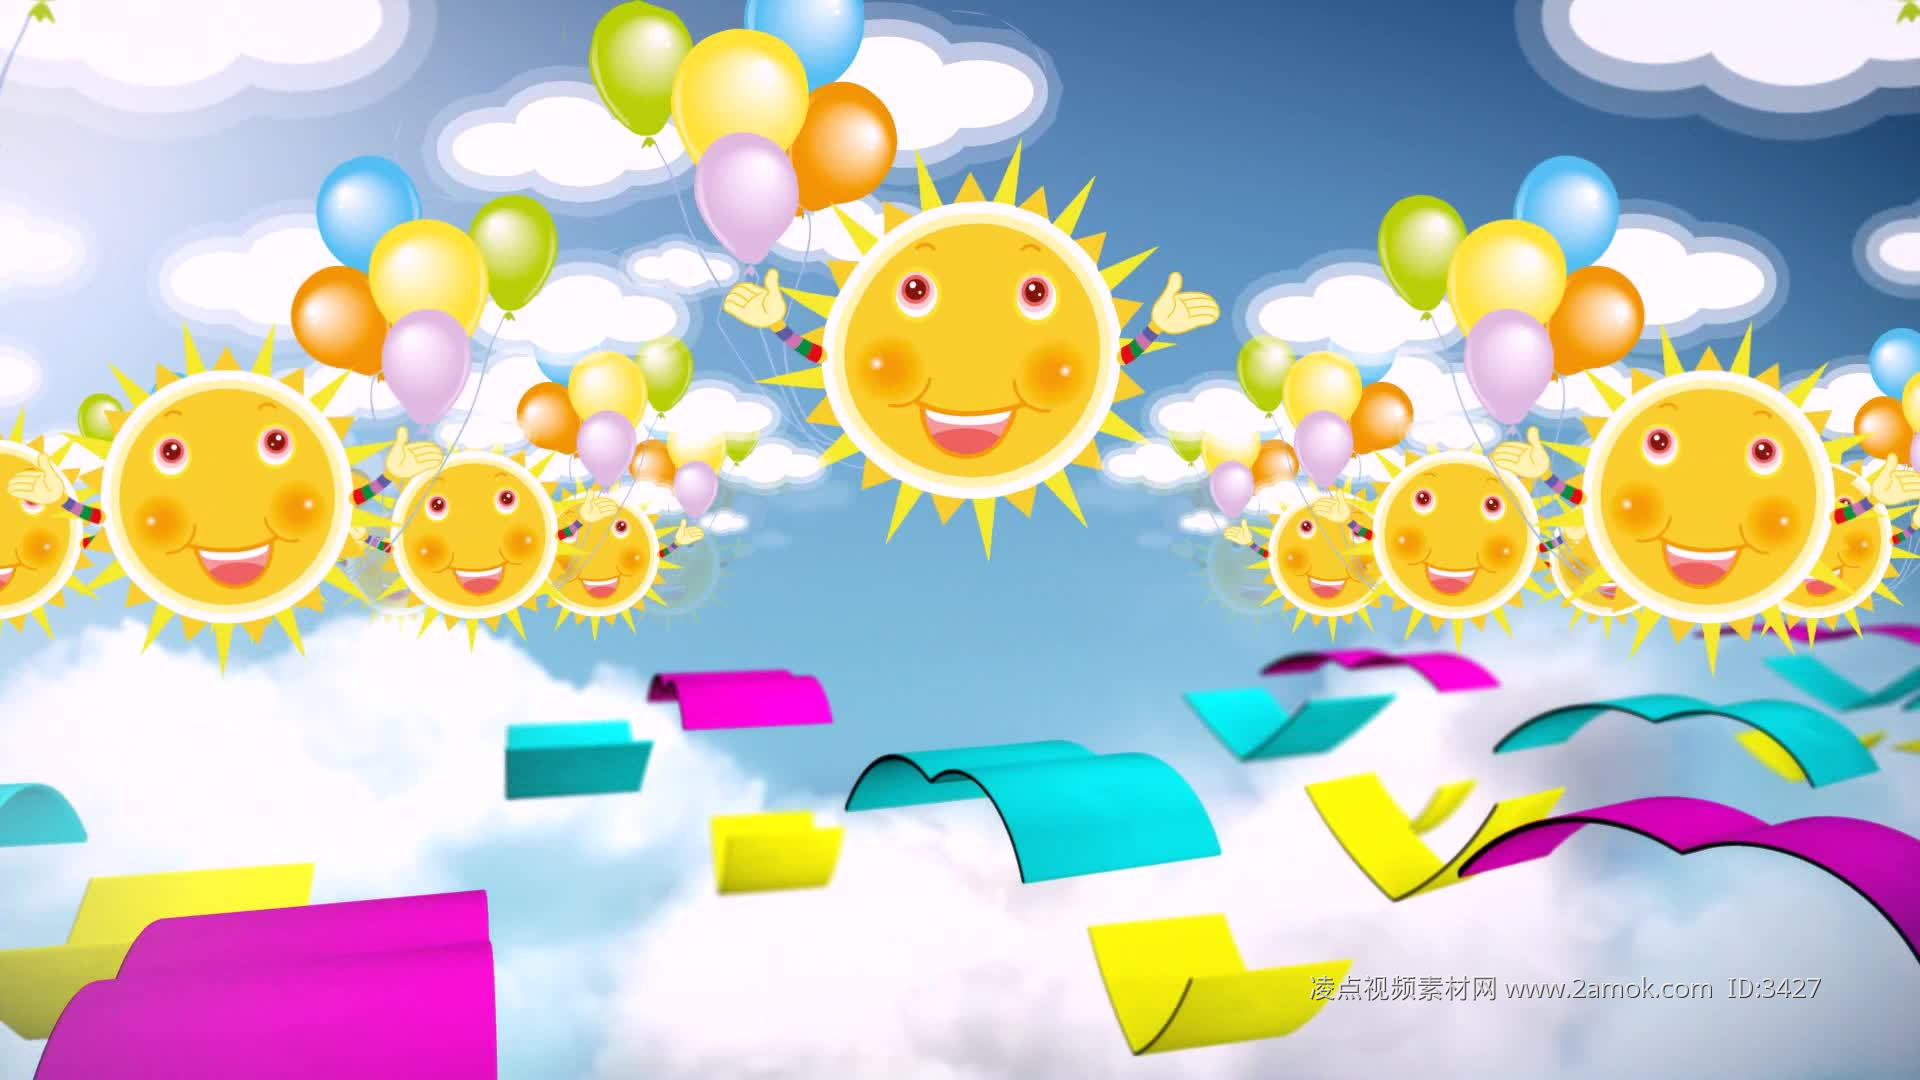 【薇Steria】儿童节就该唱可爱的儿歌【种太阳】_哔哩哔哩_bilibili